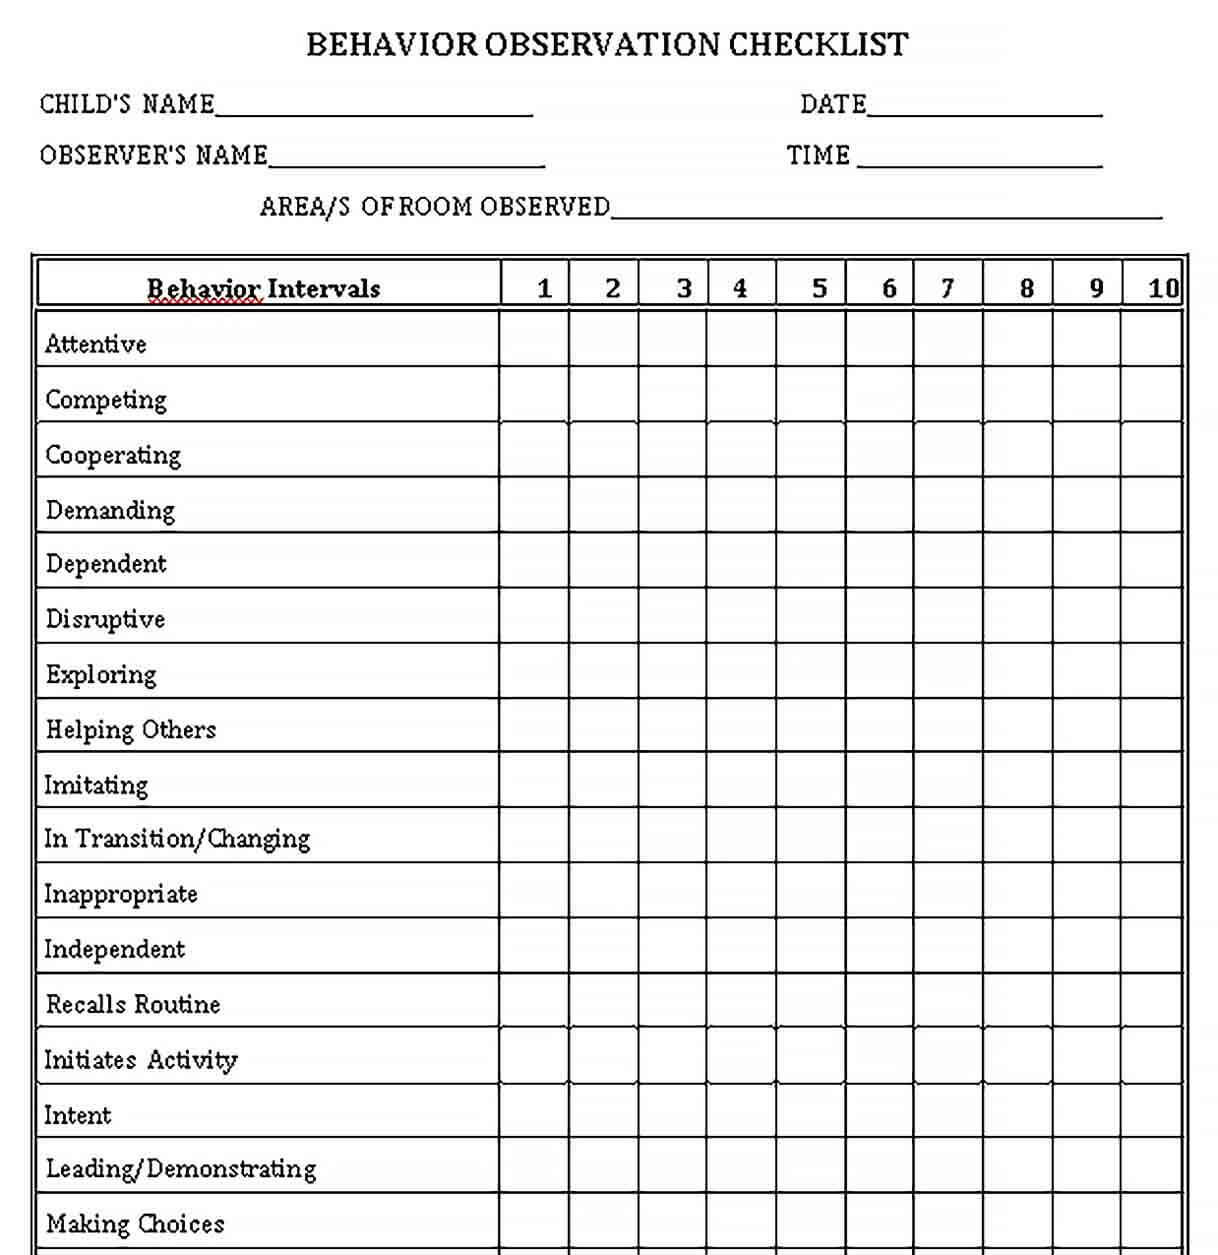 Sample Behavior Observation Checklist